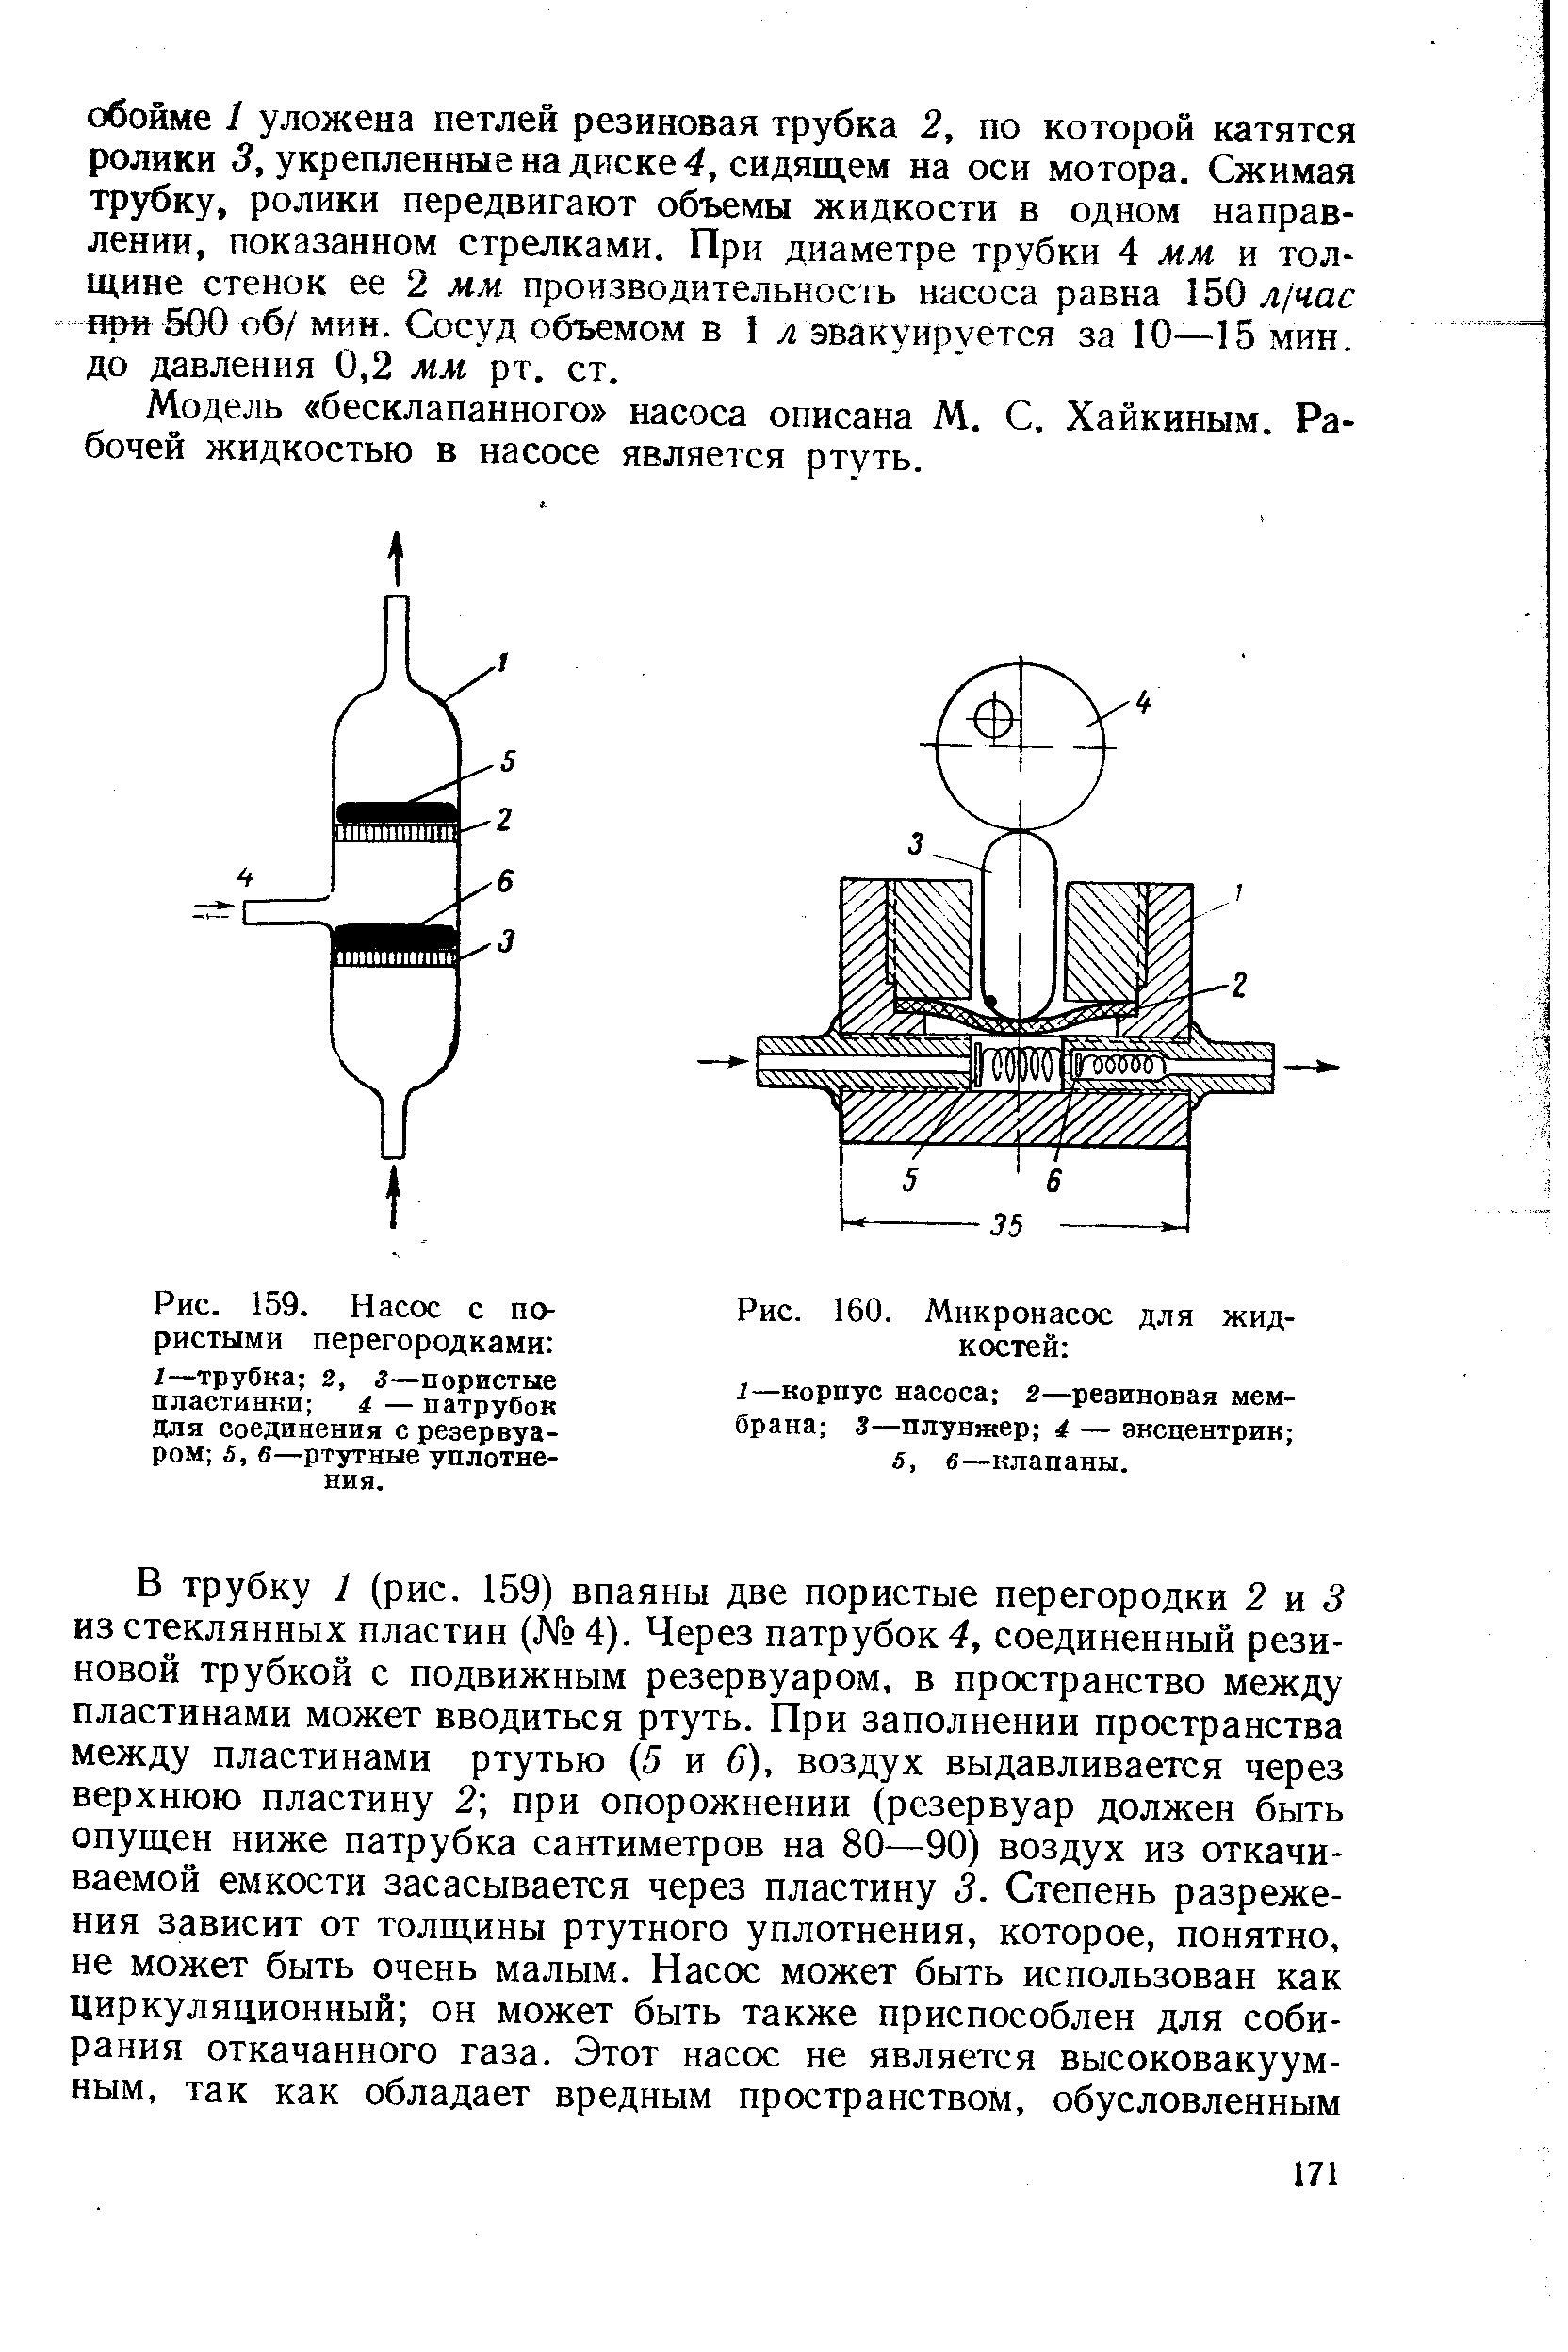 Модель бесклапанного насоса описана М. С. Хайкиным. Рабочей жидкостью в насосе является ртуть.